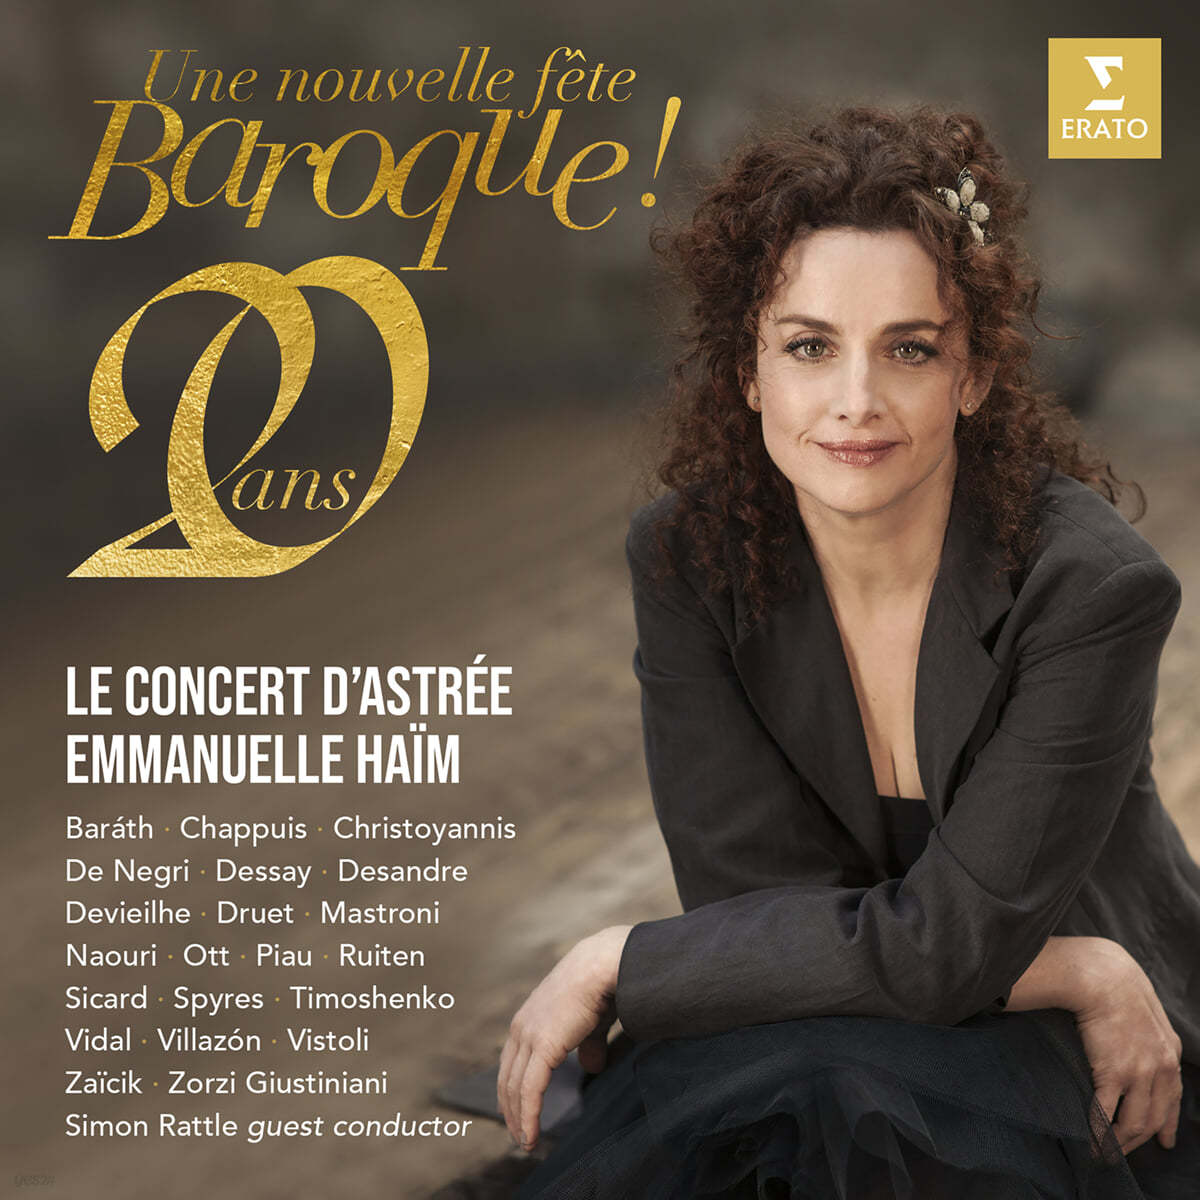 Emmanuelle Haim / Le Concert d&#39;Astree 새로운 바로크 페스티벌 (Une Nouvelle Fete Baroque!) 